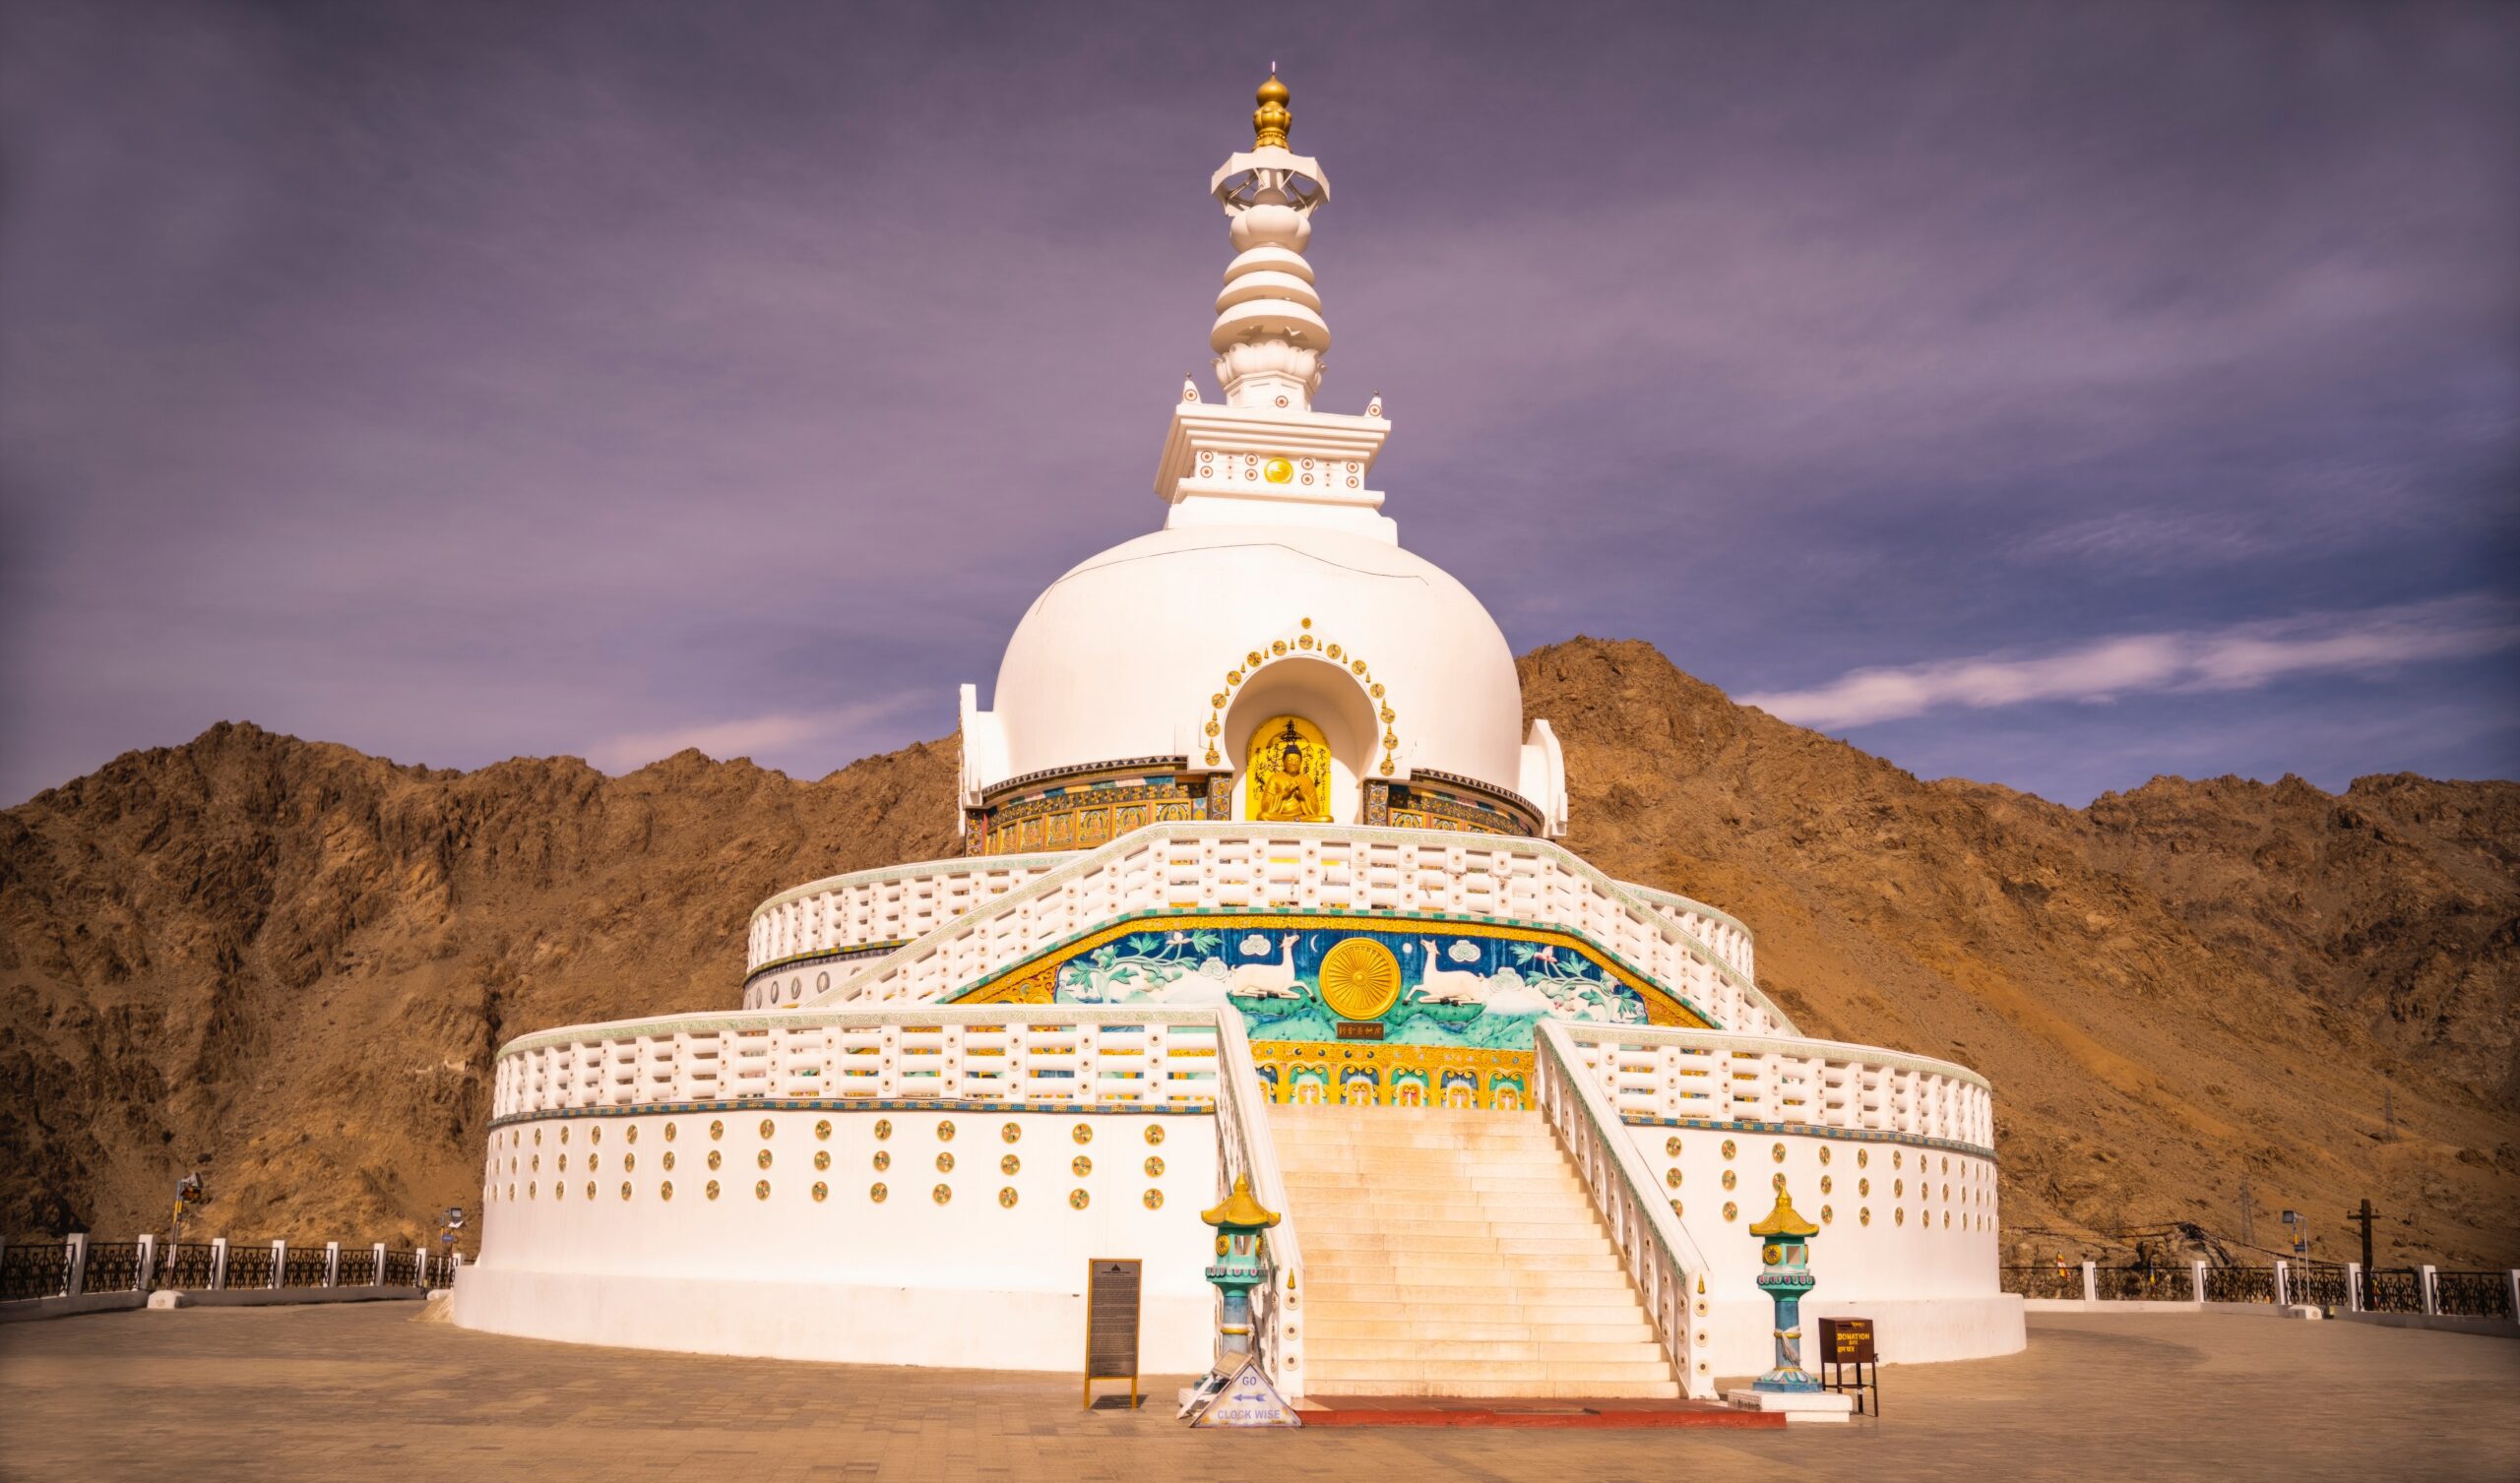 ladakh tourist places with names